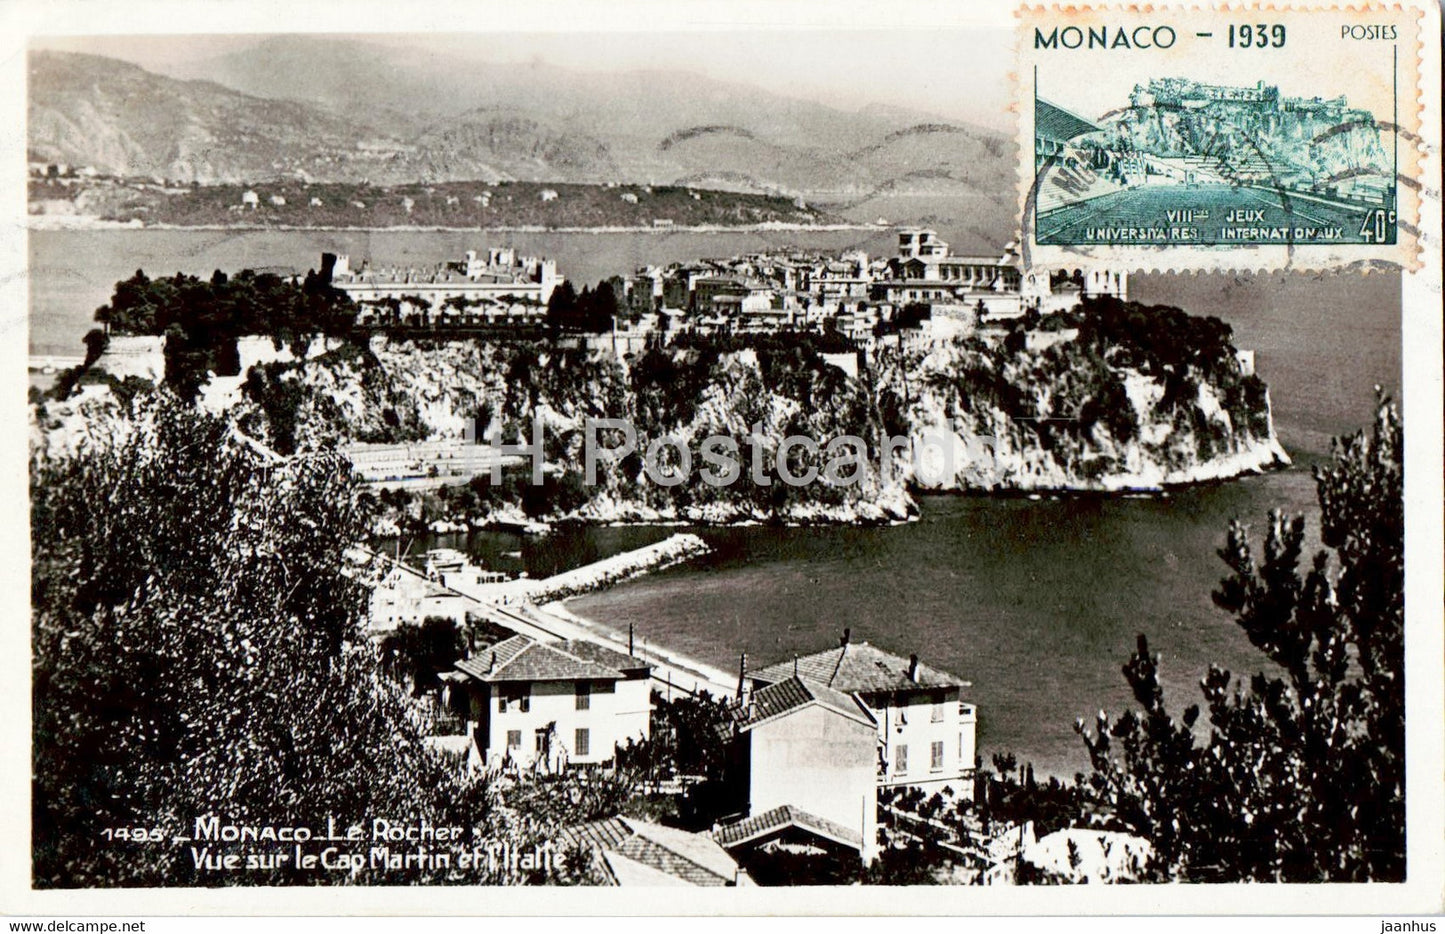 Monaco - Le Rocher - Vue sur Martin et l'Italie - 1495 - old postcard - 1939 - Monaco - used - JH Postcards